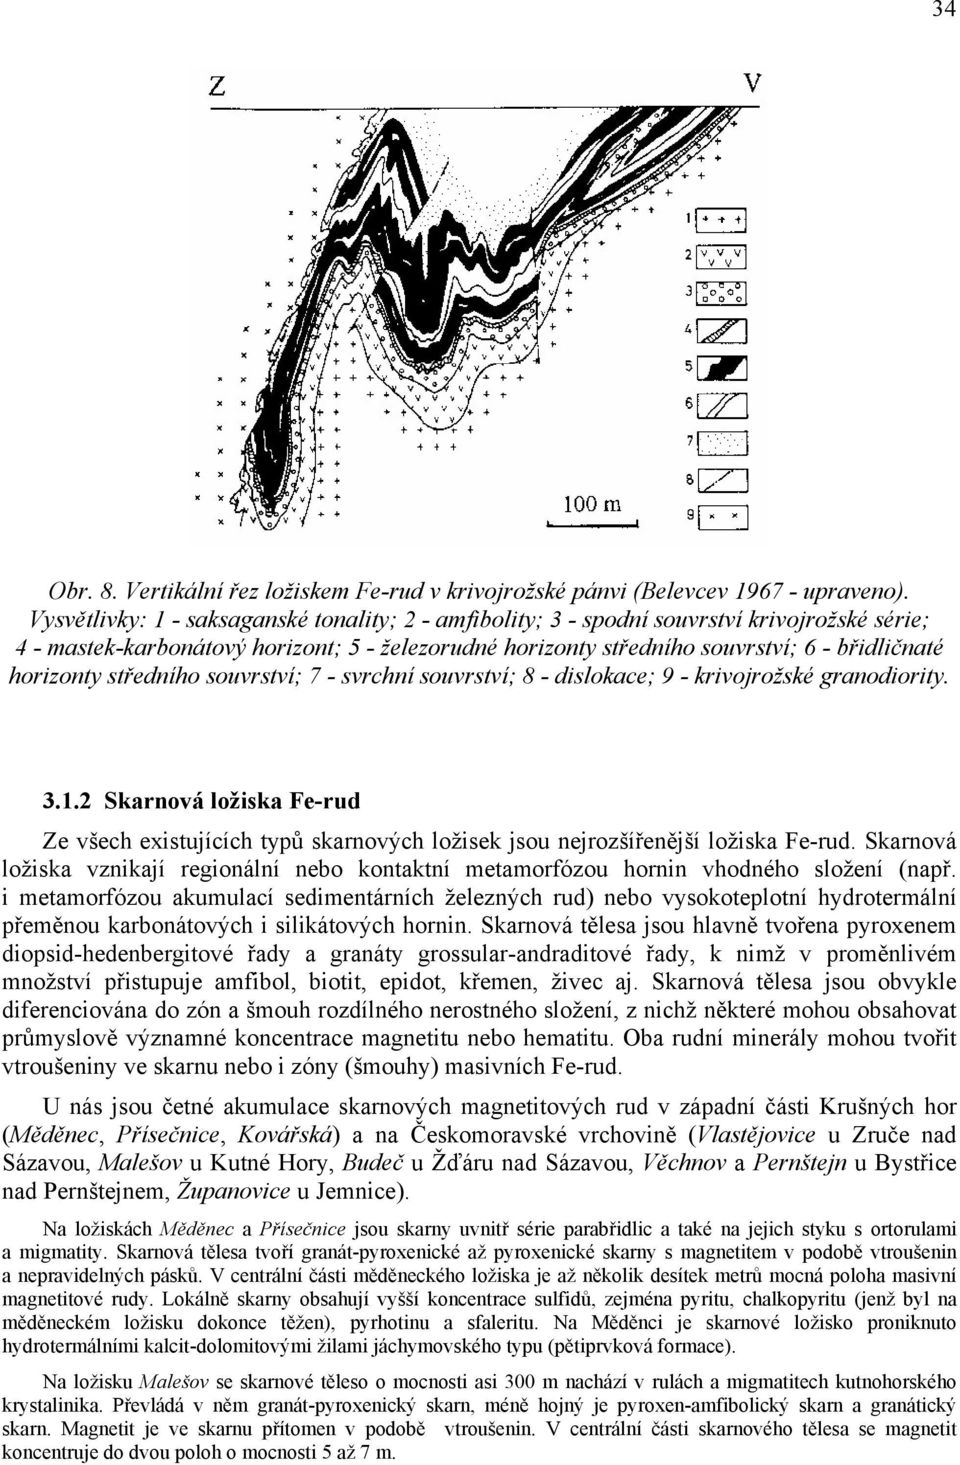 horizonty středního souvrství; 7 - svrchní souvrství; 8 - dislokace; 9 - krivojrožské granodiority. 3.1.